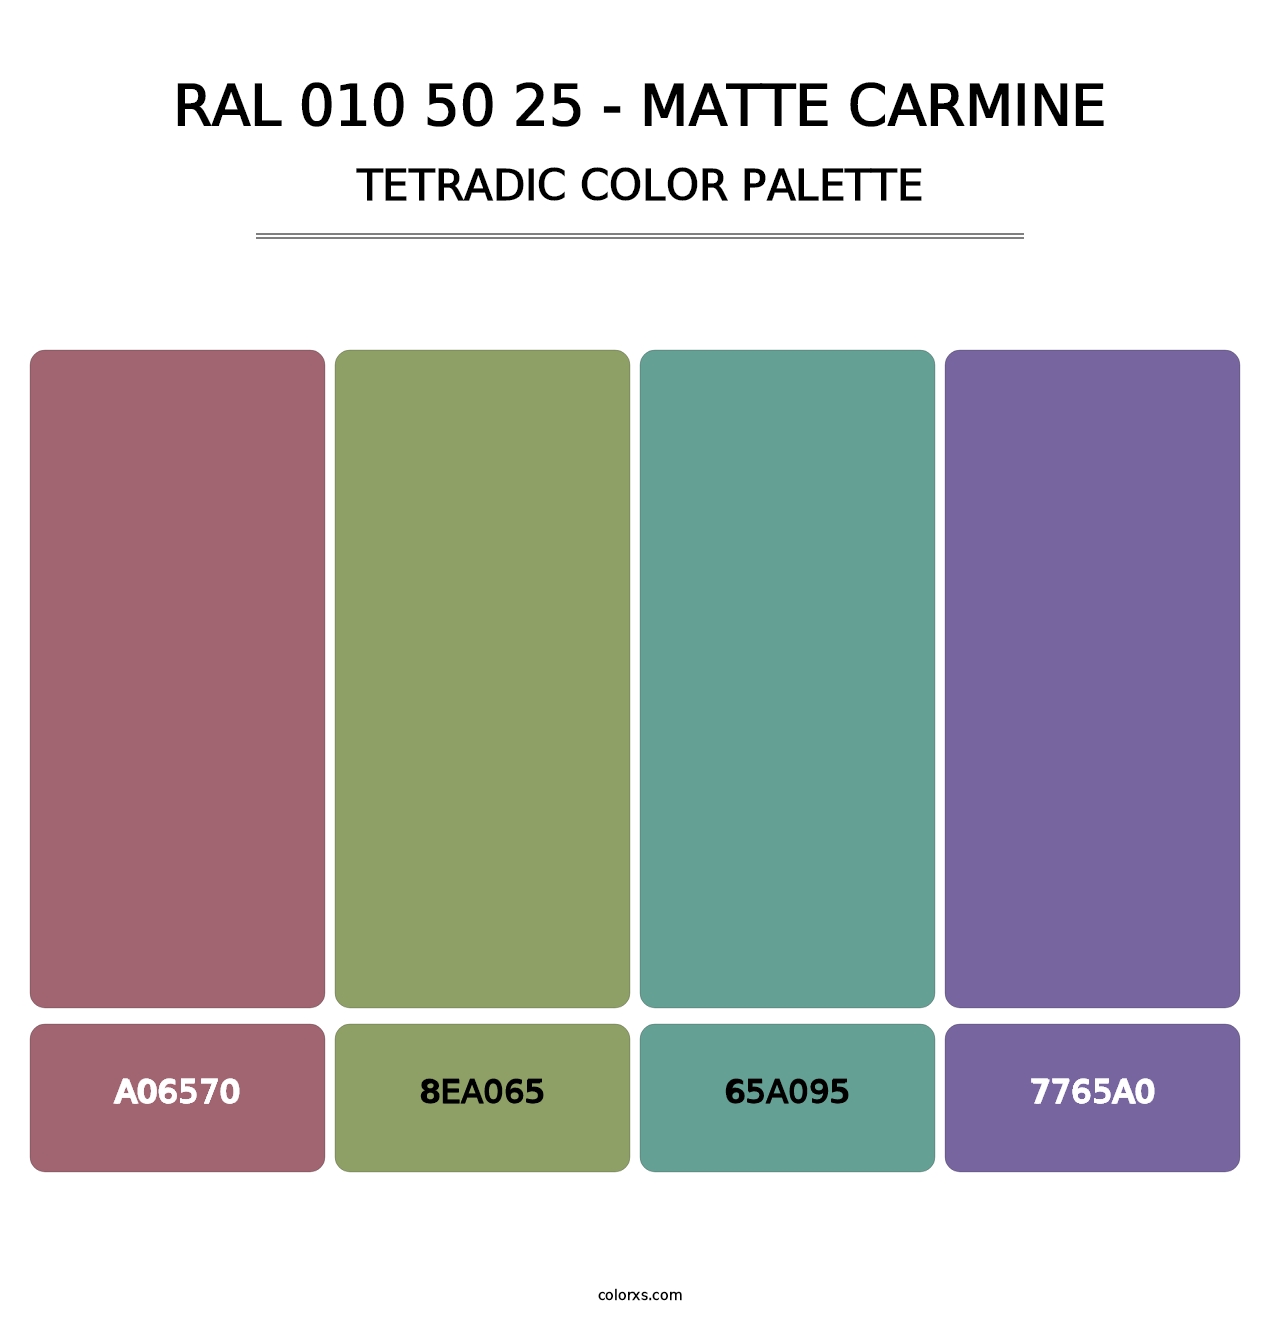 RAL 010 50 25 - Matte Carmine - Tetradic Color Palette